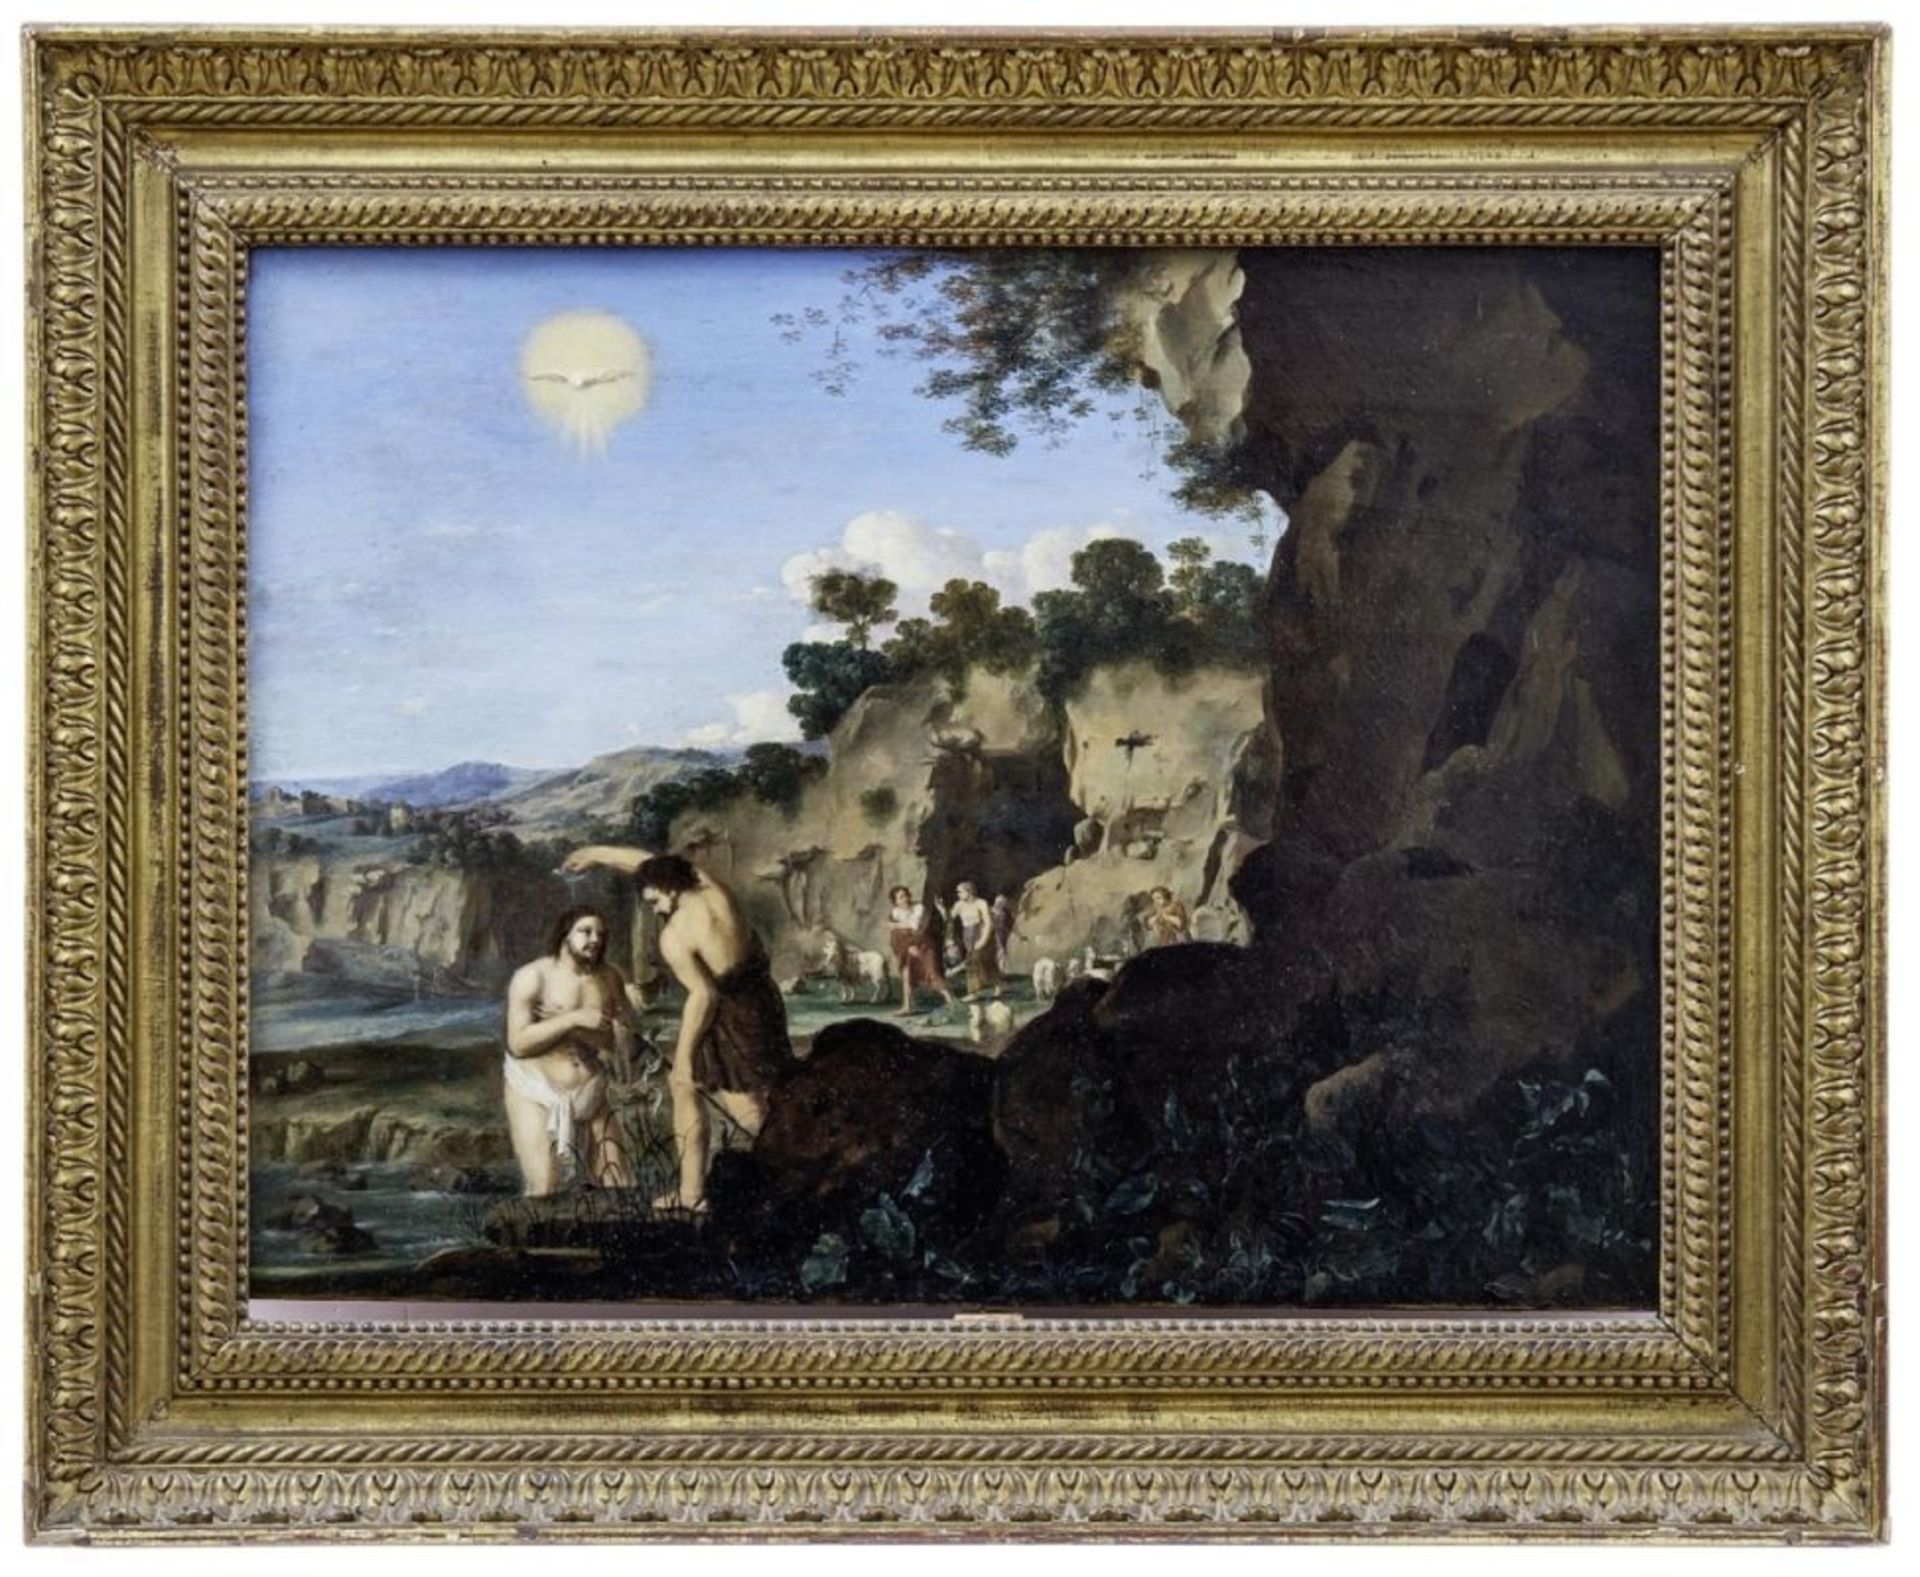 Taufe Christi im Jordan durch Johannes den Täufer, Niederländischer Maler des 17. Jahrhunderts